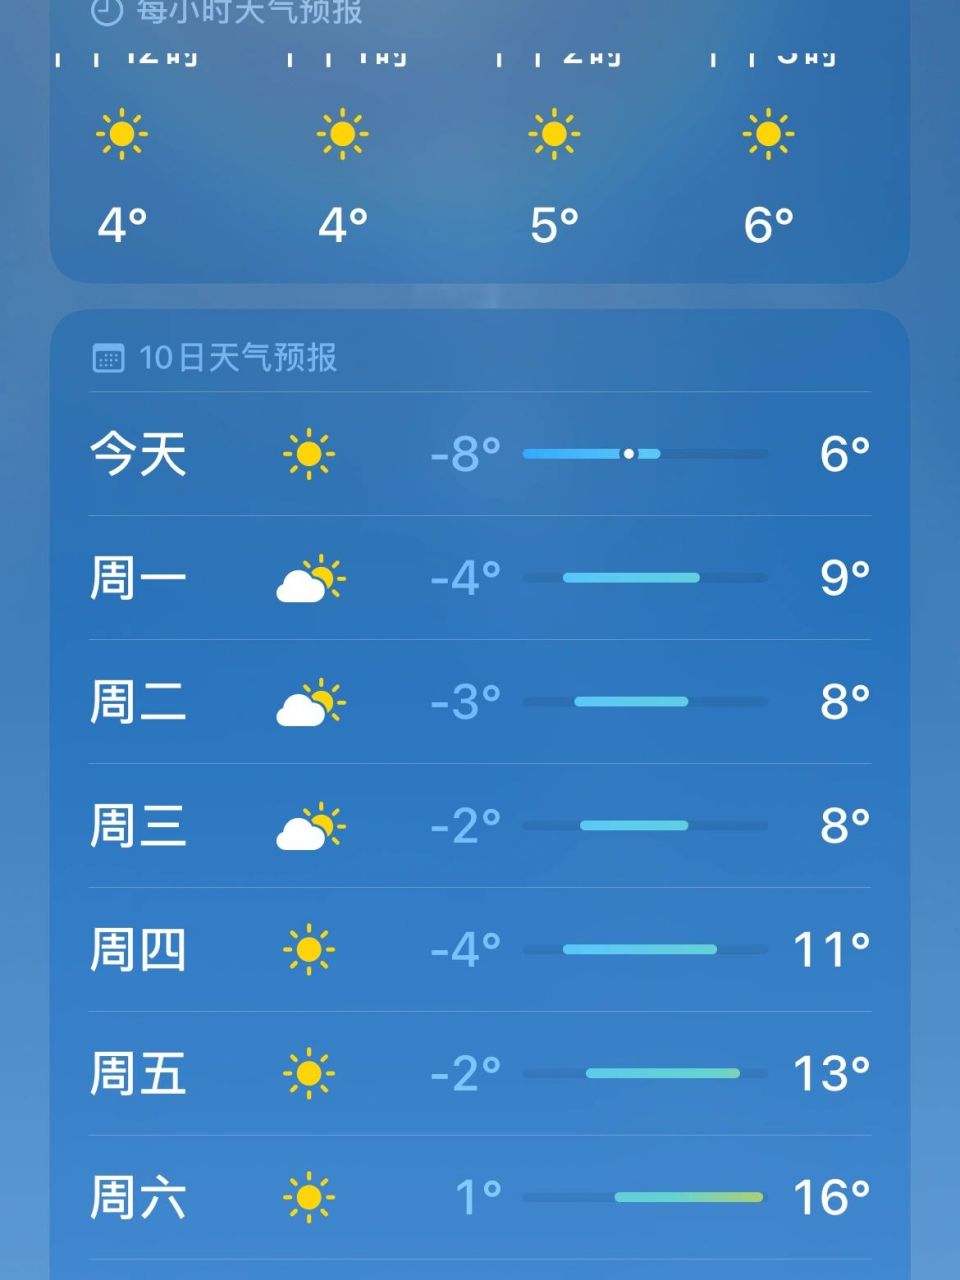 苹果手机的天气预报是不是不准啊 同一地点,不同软件的天气 差别也太